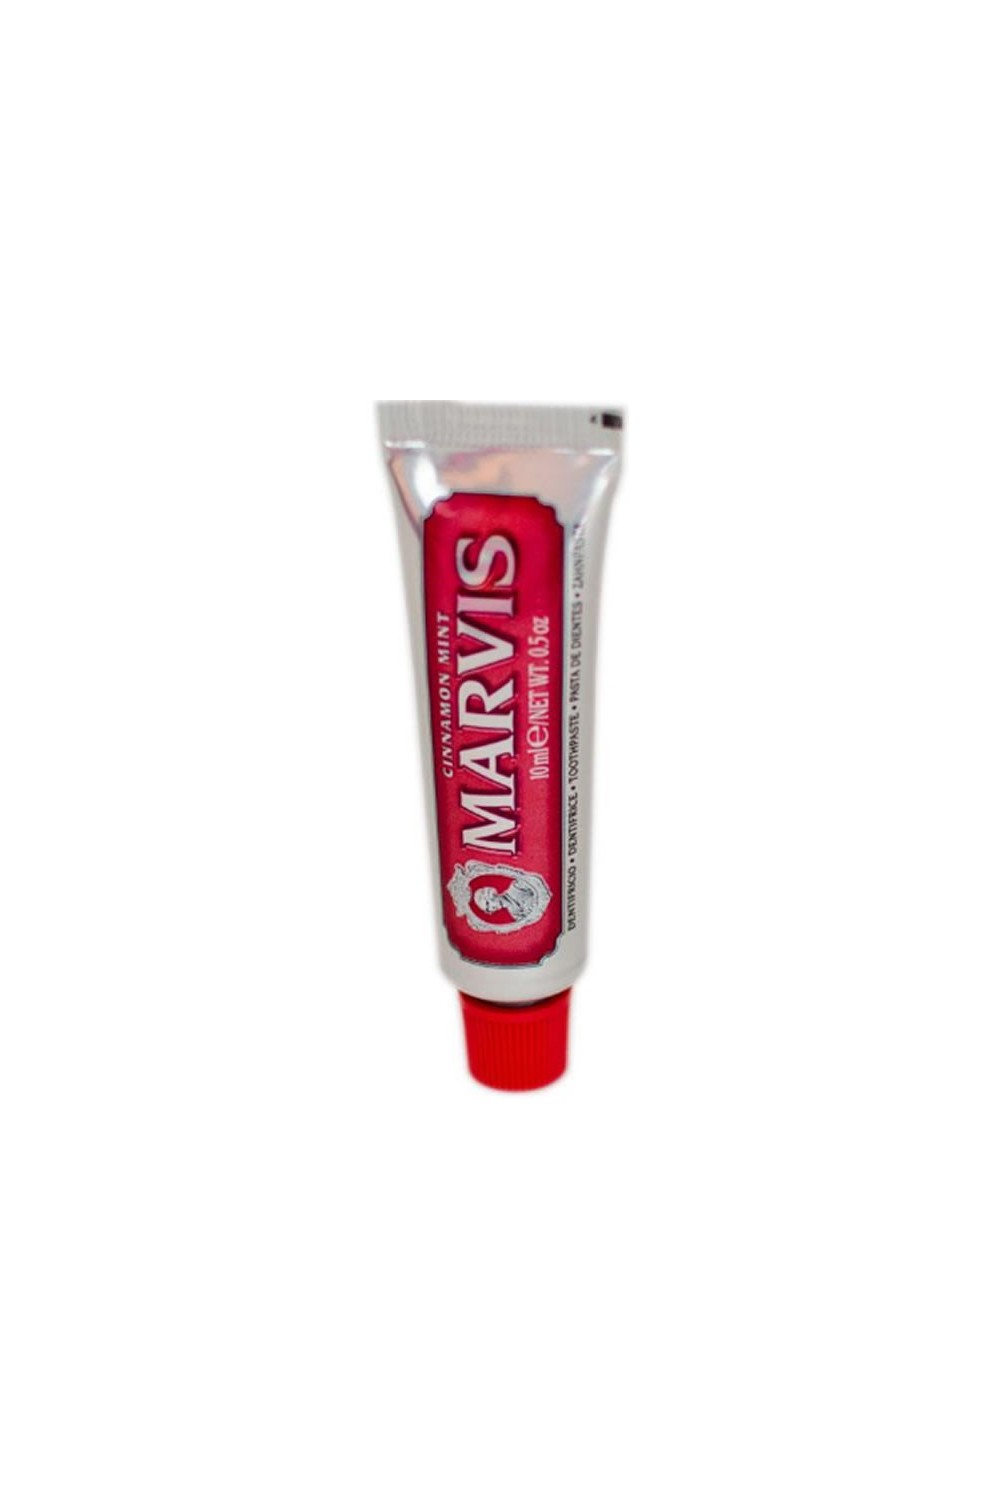 Marvis Cinnamon Mint Toothpaste 10ml